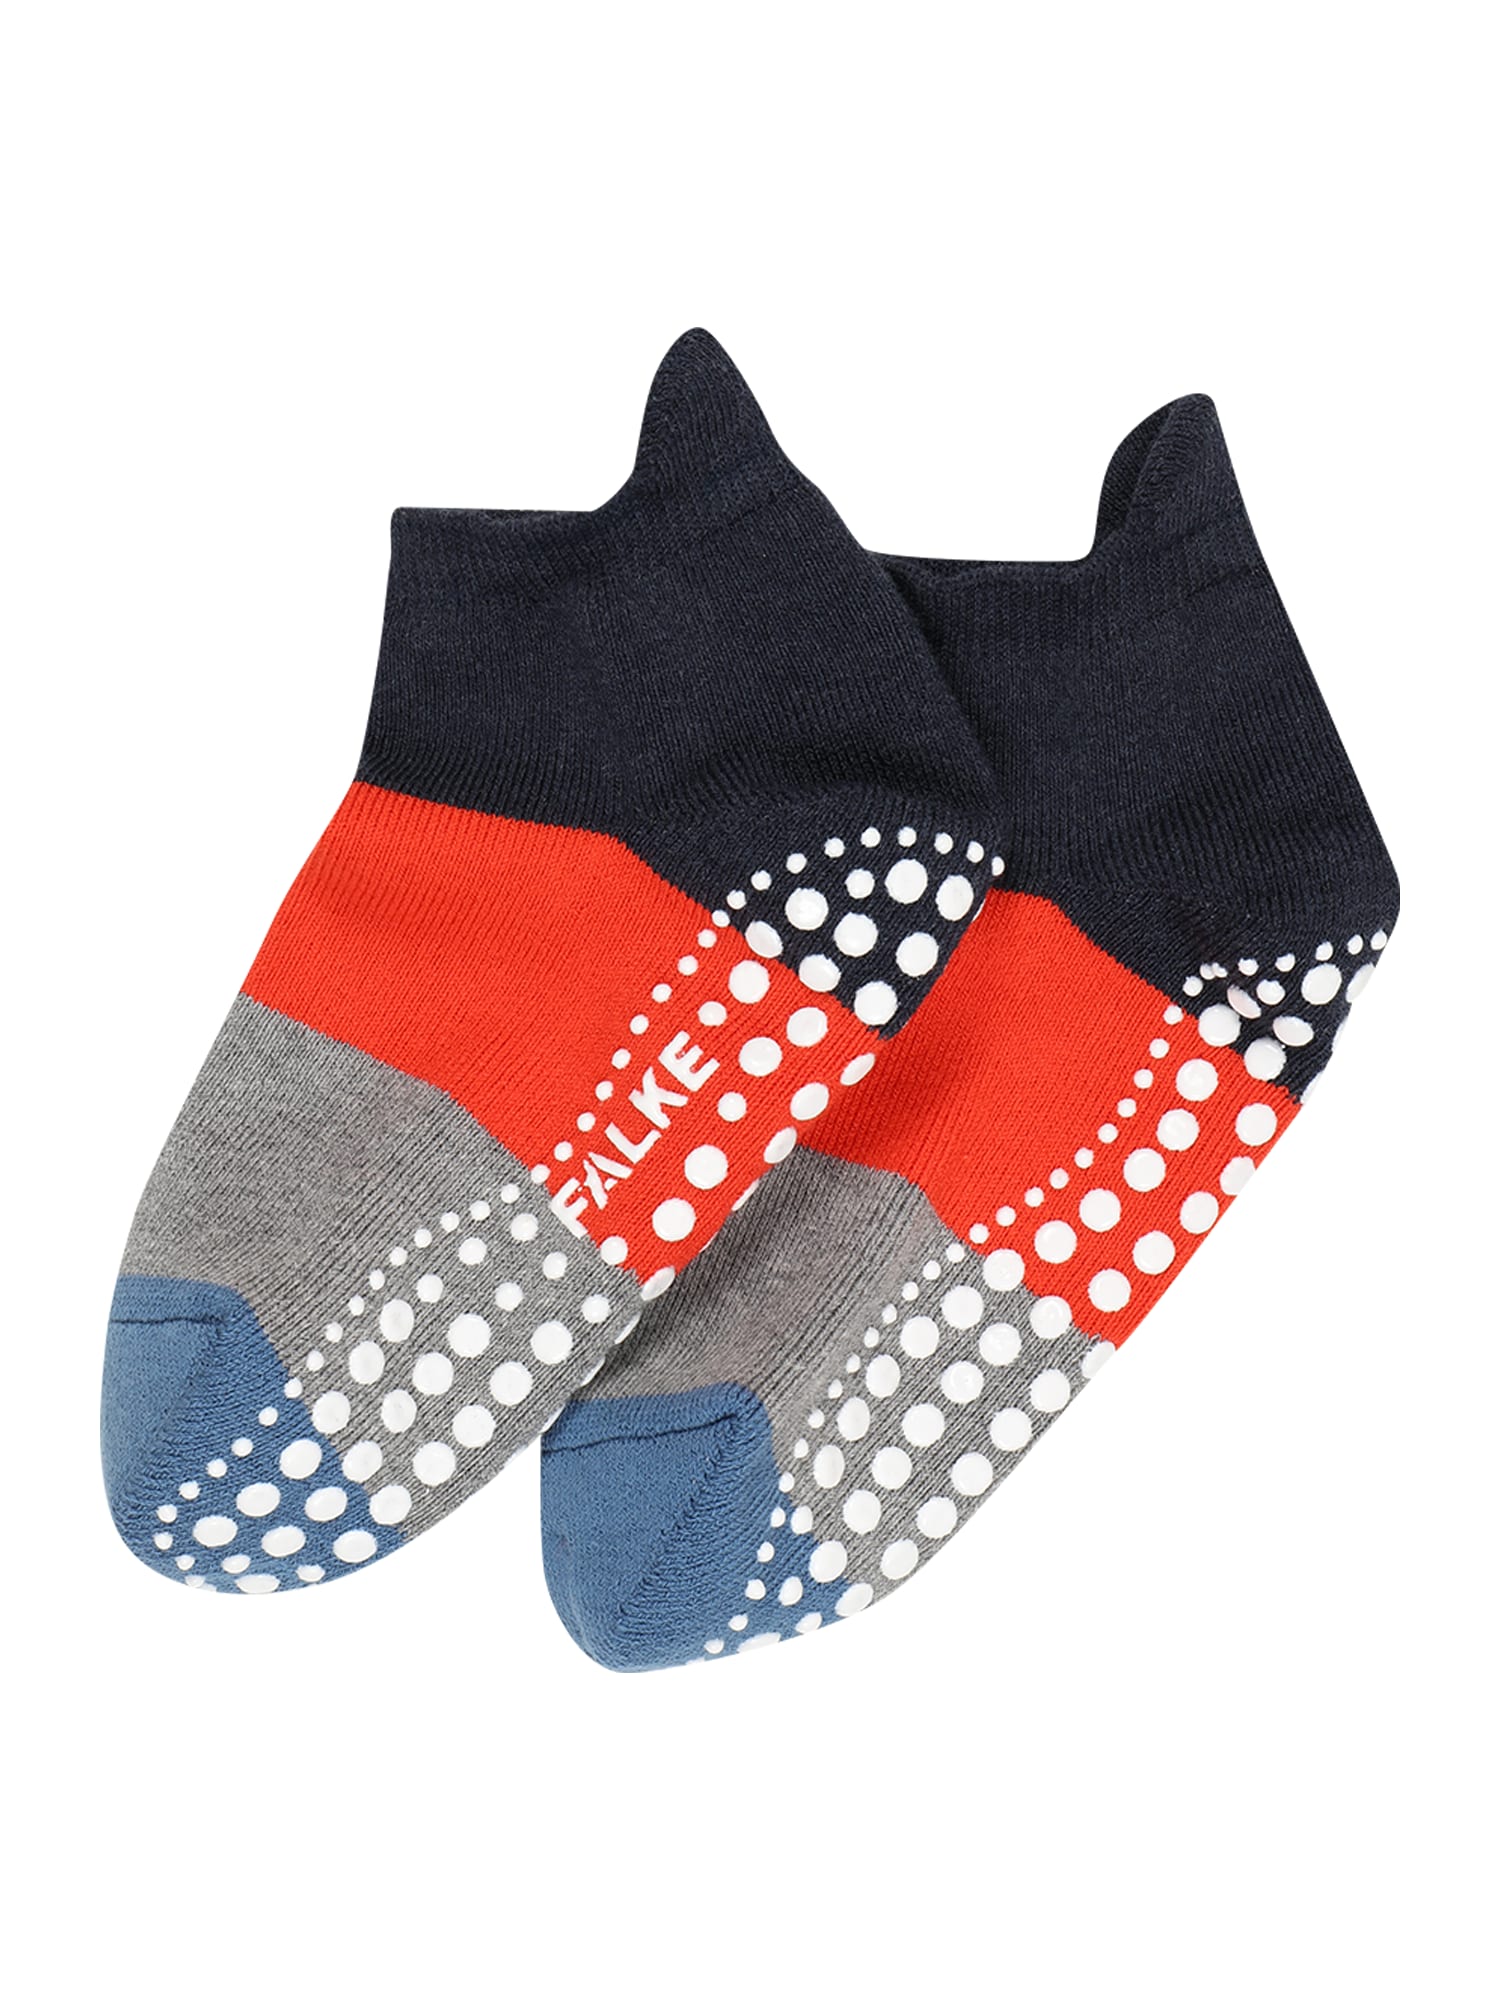 FALKE Čarape 'Catspads'  golublje plava / siva / crvena / crna